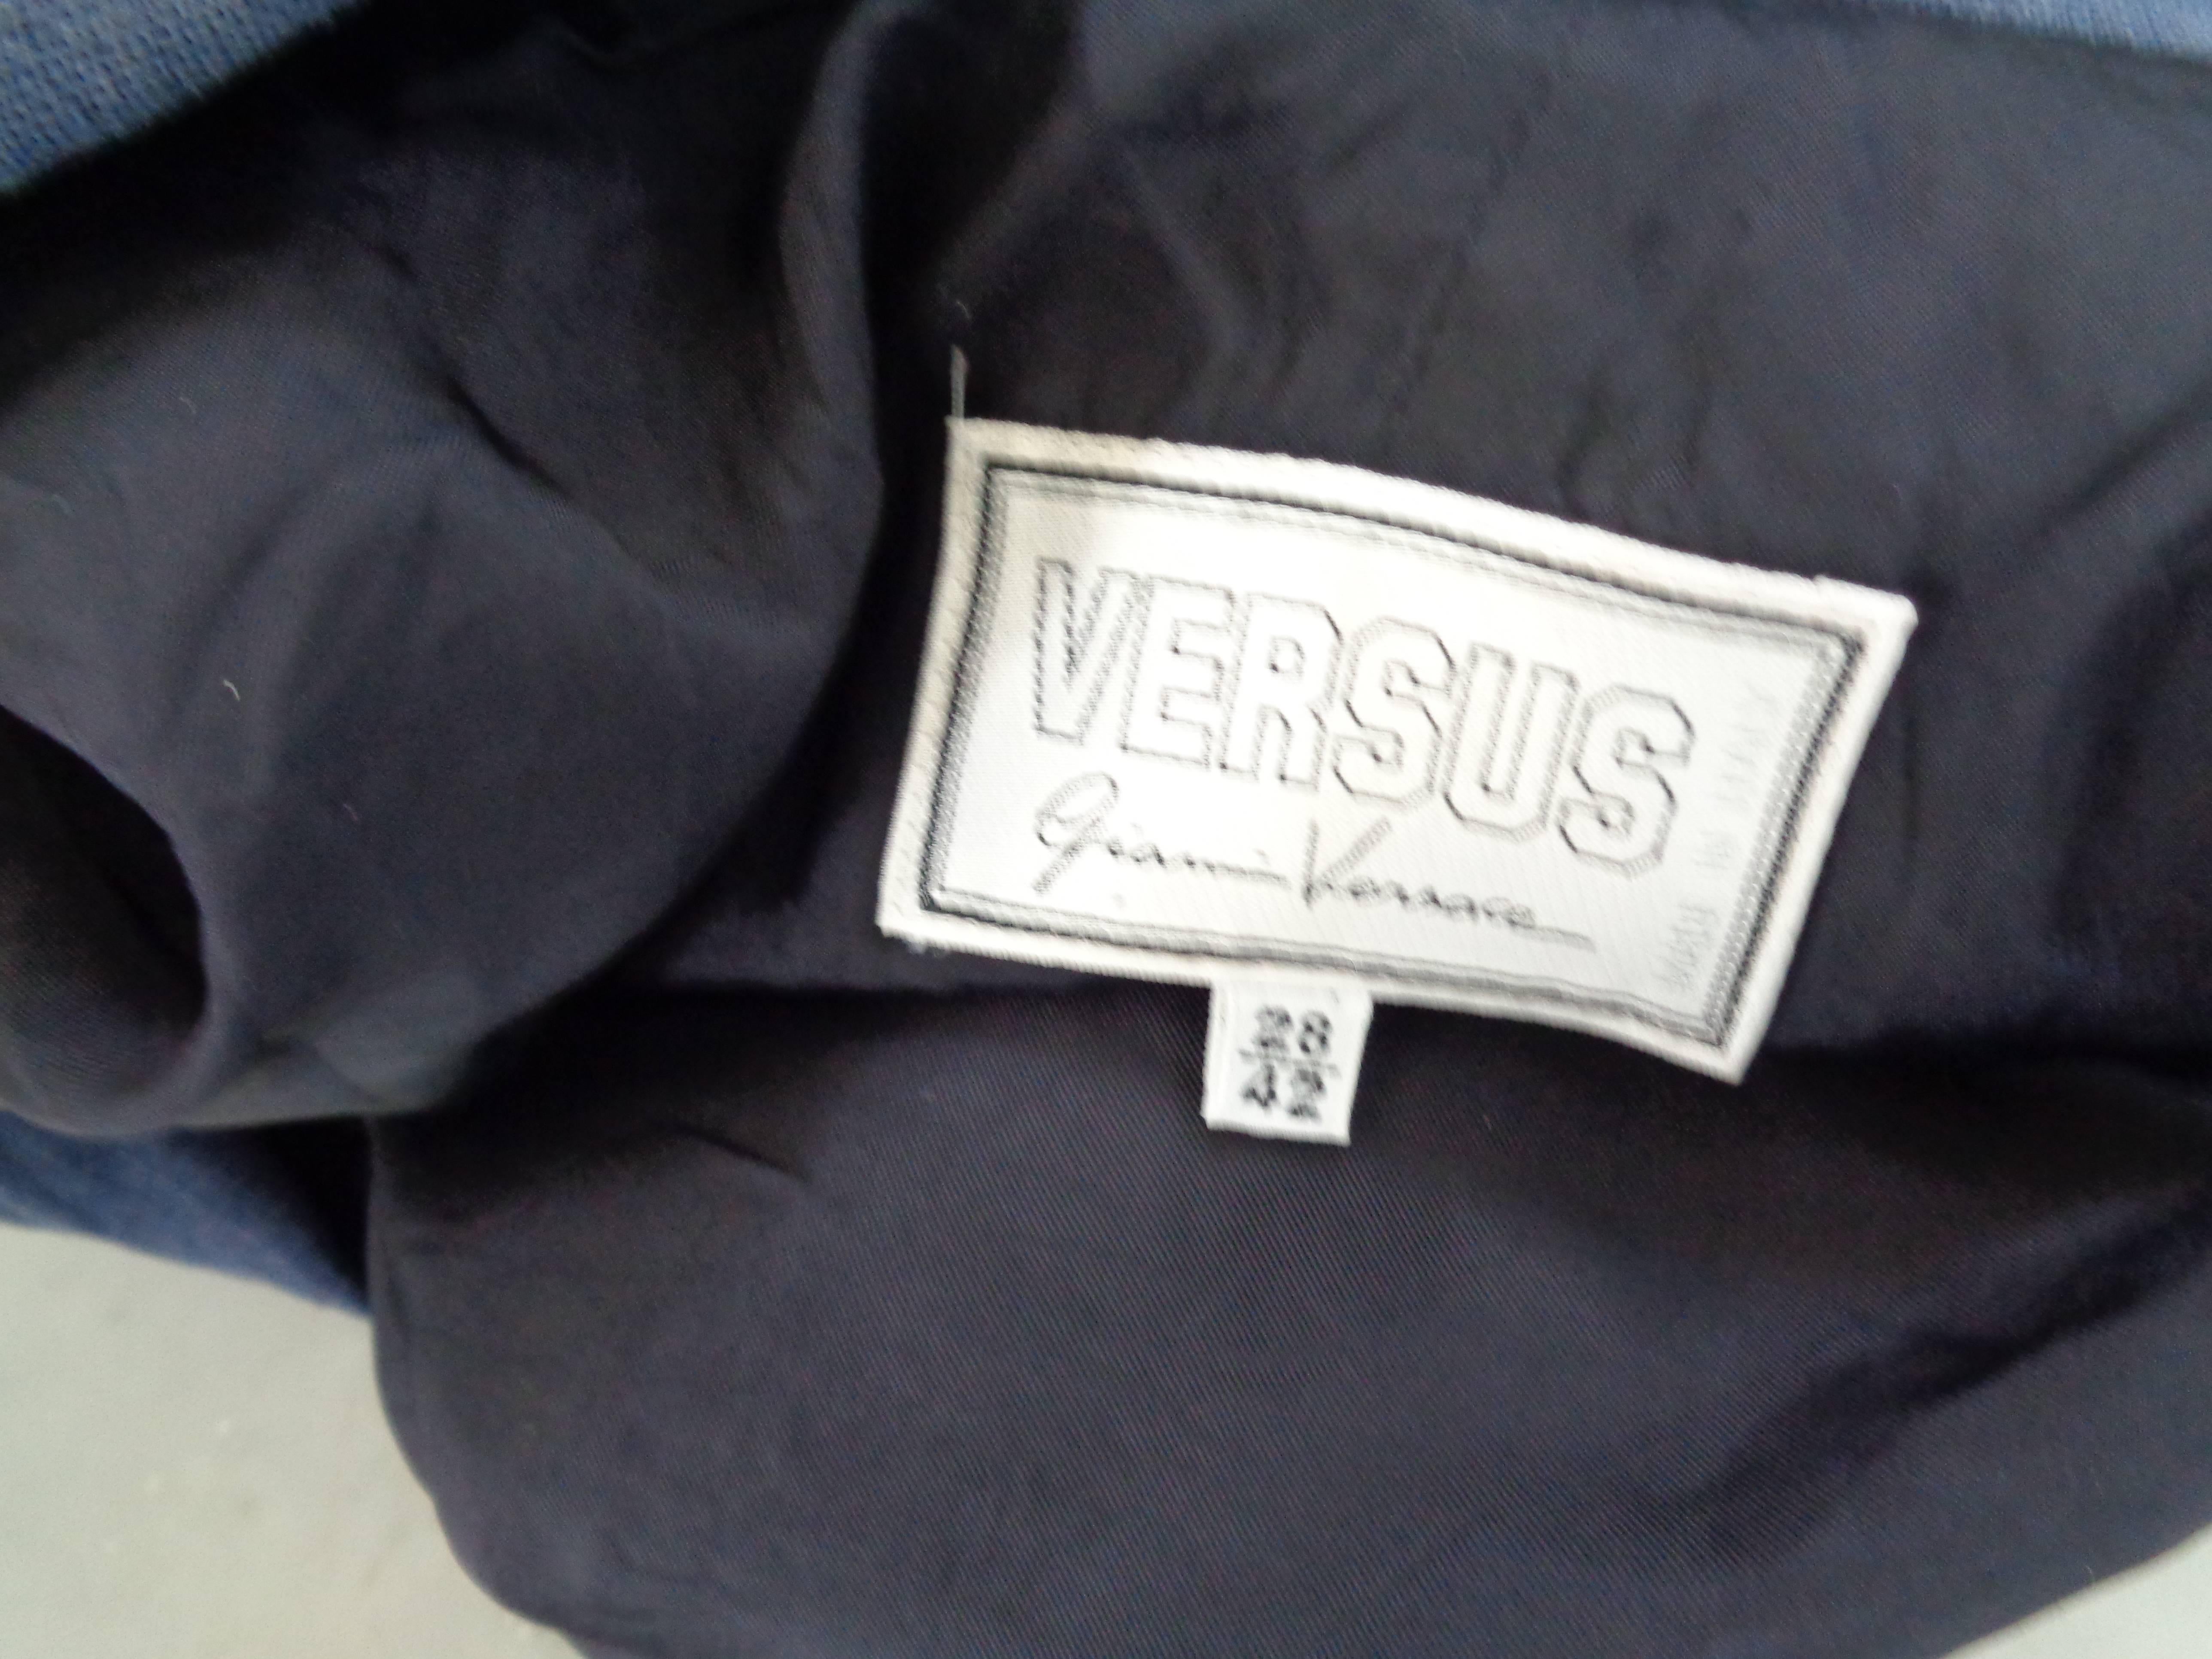 Women's or Men's Versus by Gianni Versace Denim Jacket